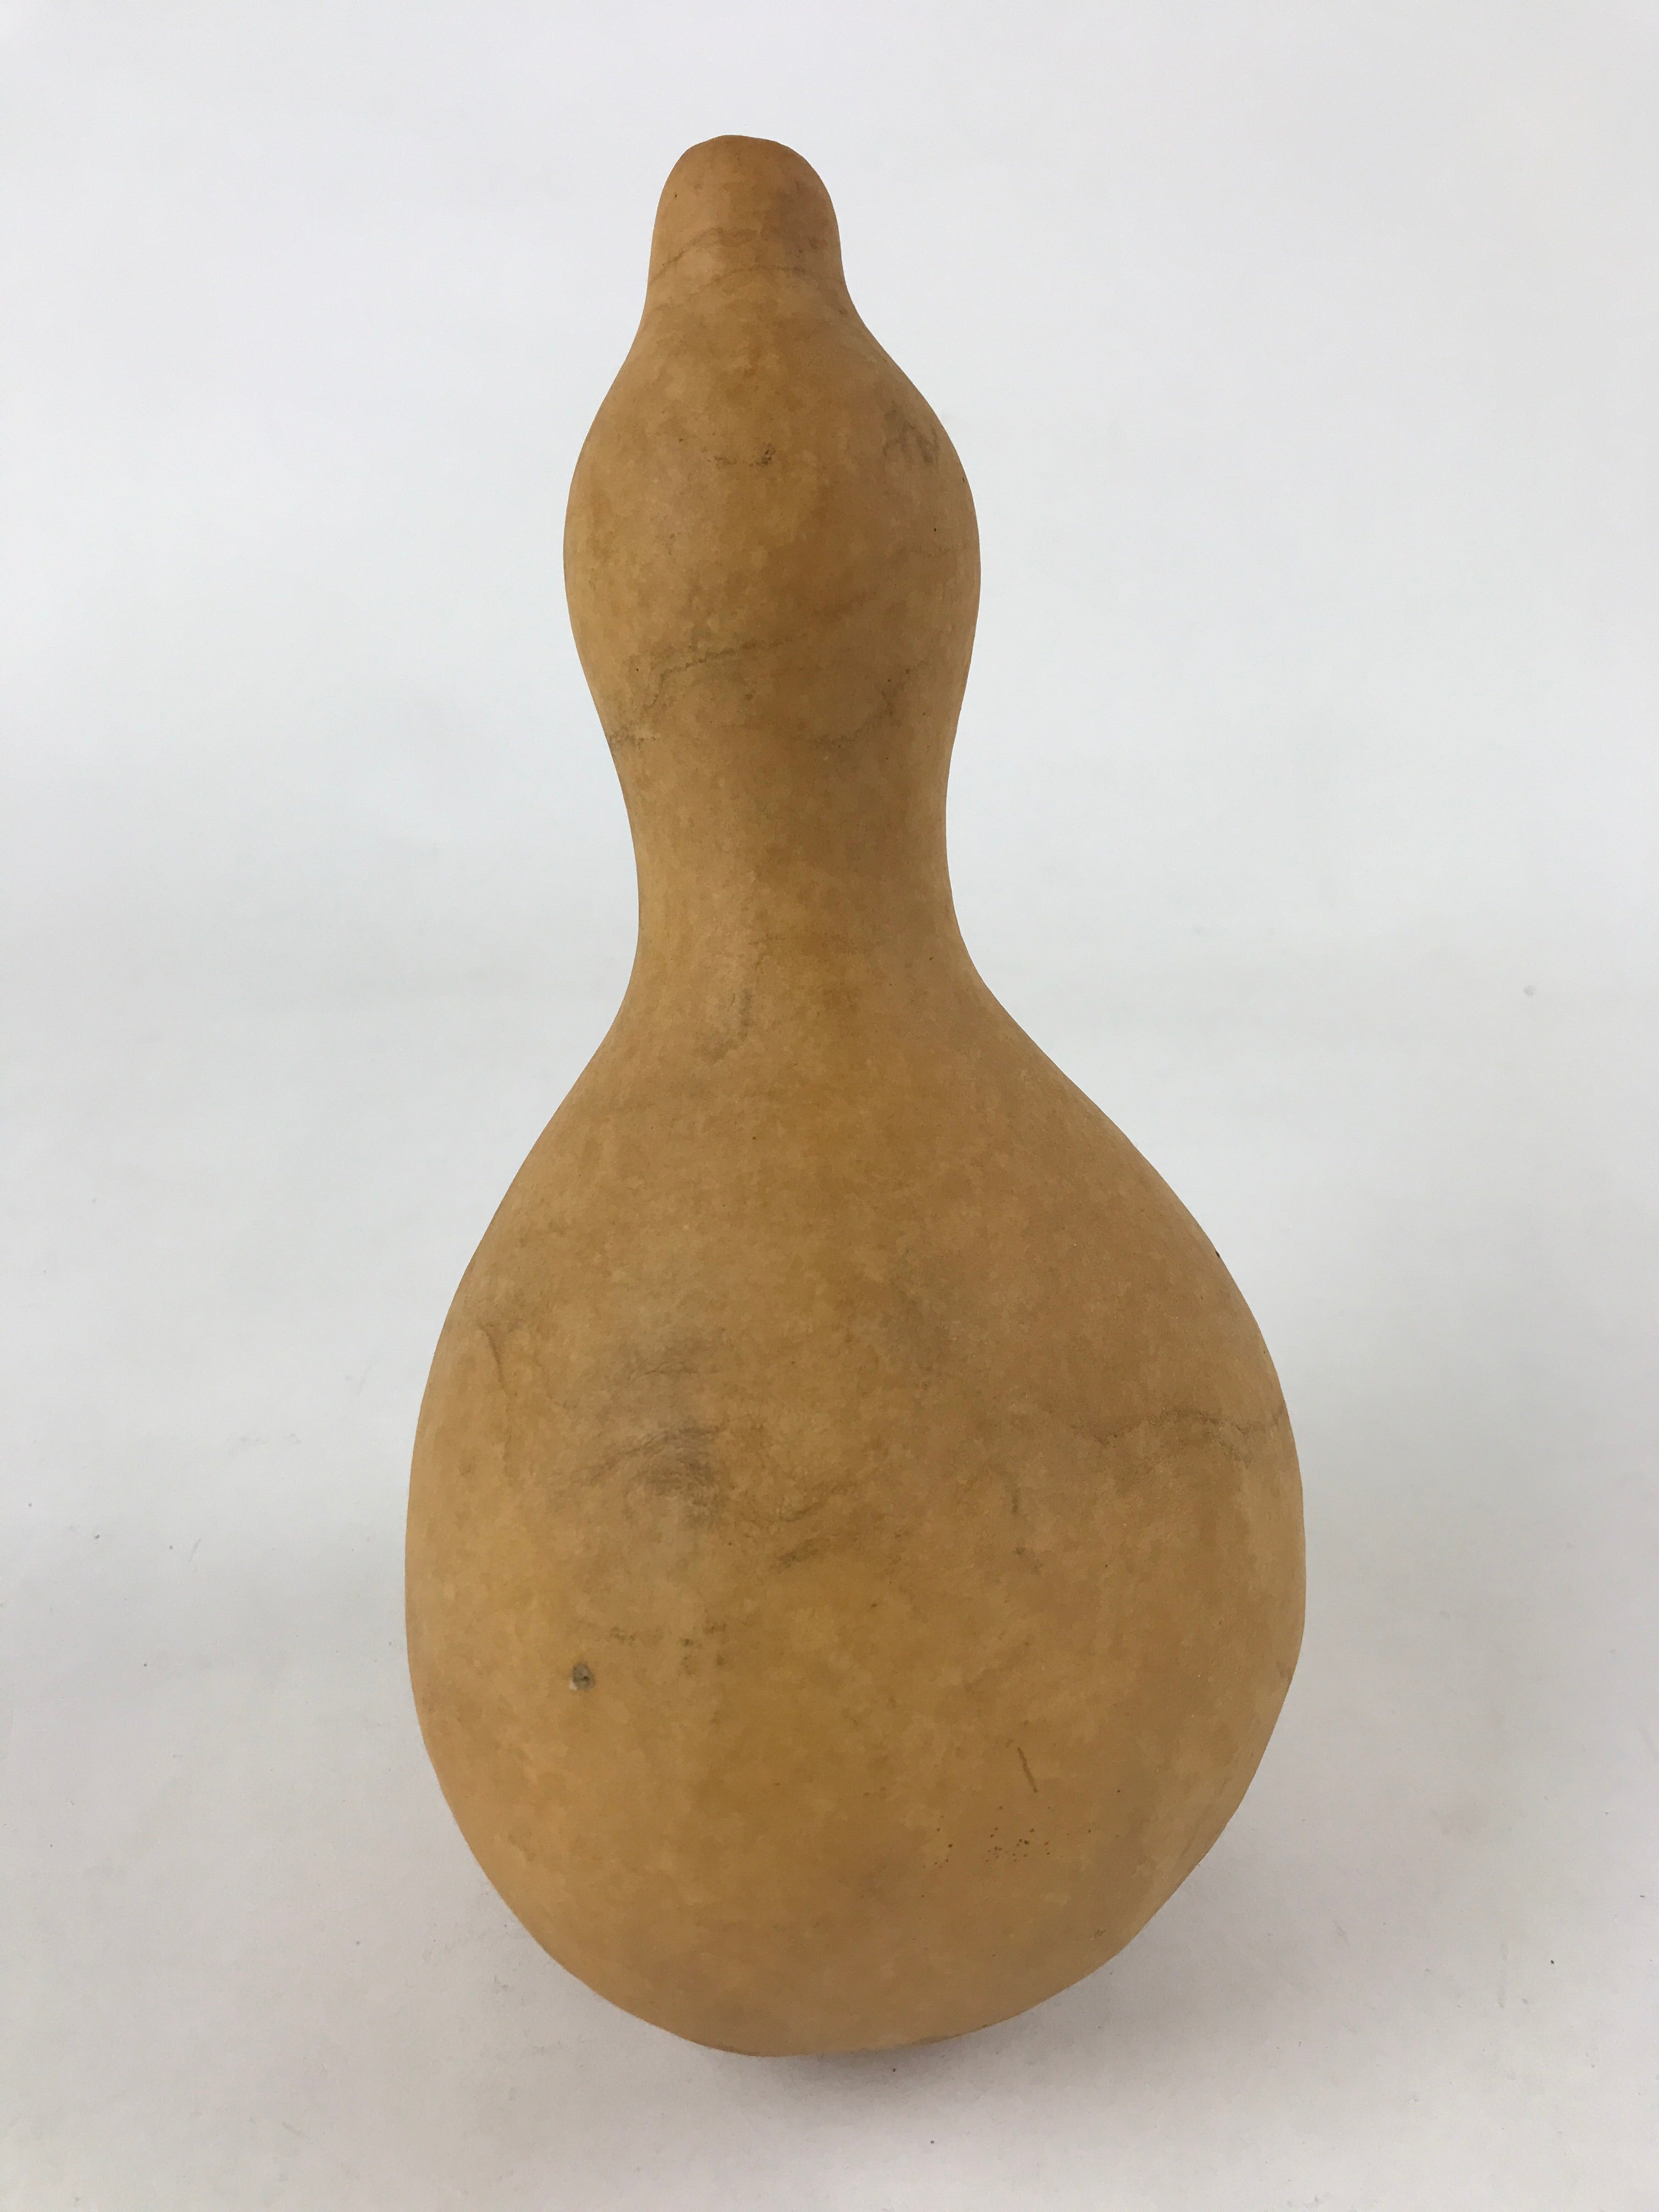 Japanese Natural Hyotan Gourd Vtg Sake Bottle Lucky Charm Large Calabash G253